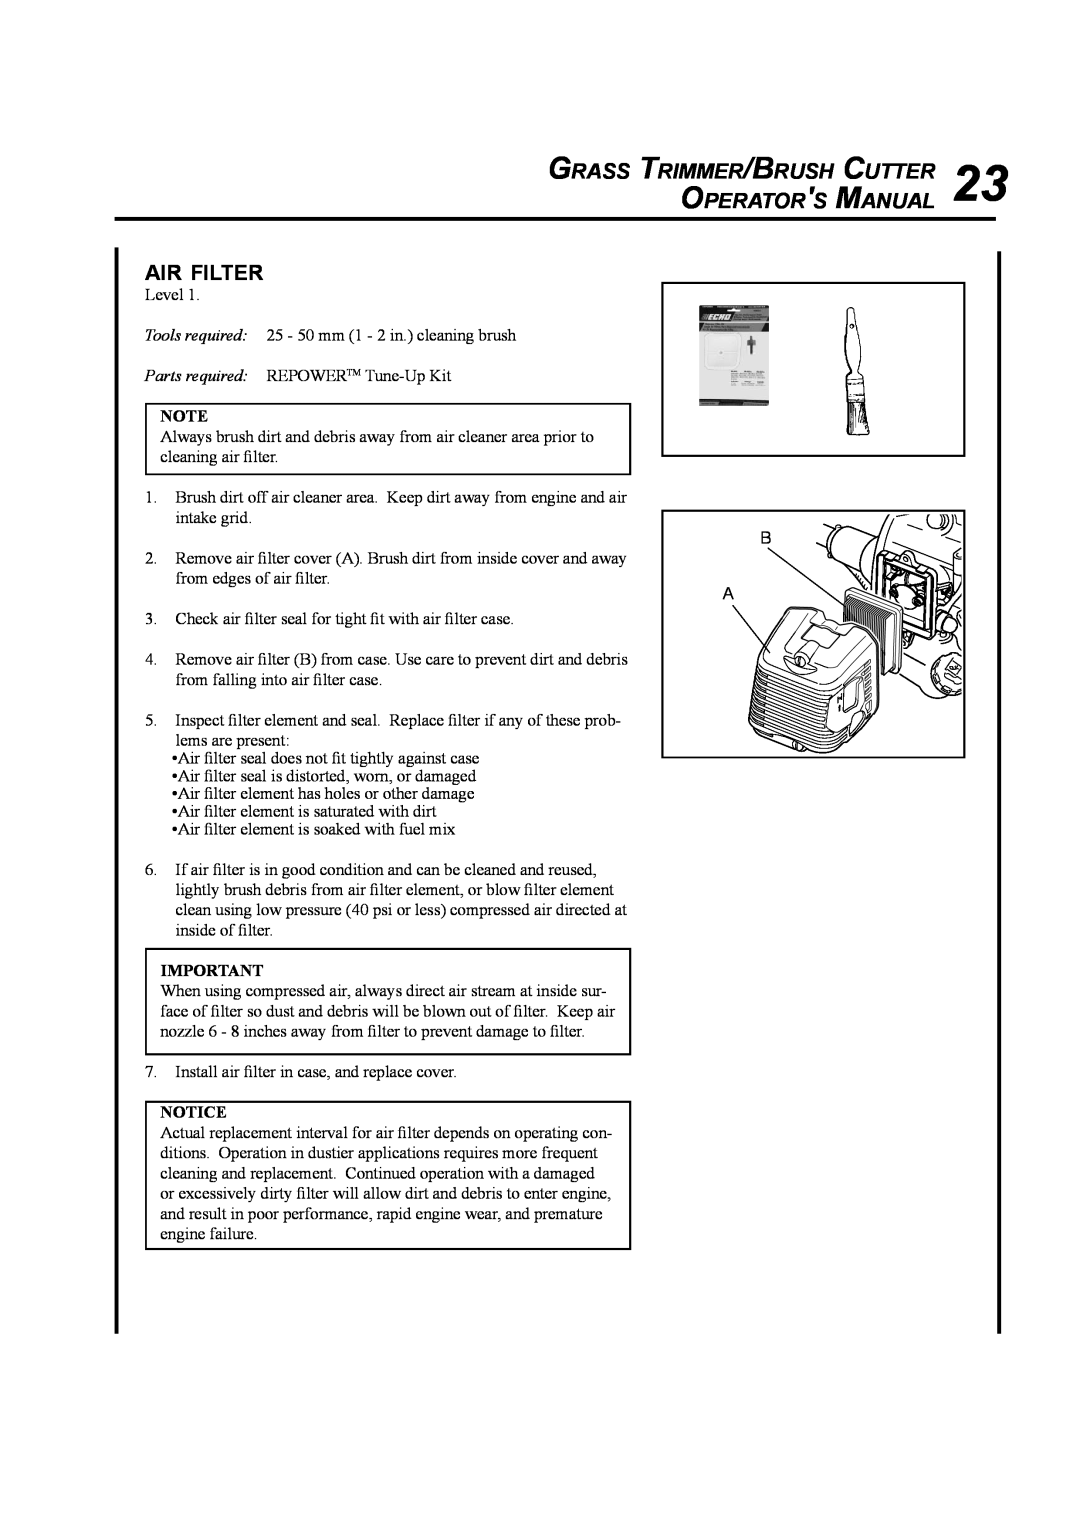 Echo SRM-410U manual Air Filter, Grass Trimmer/Brush Cutter Operators Manual 